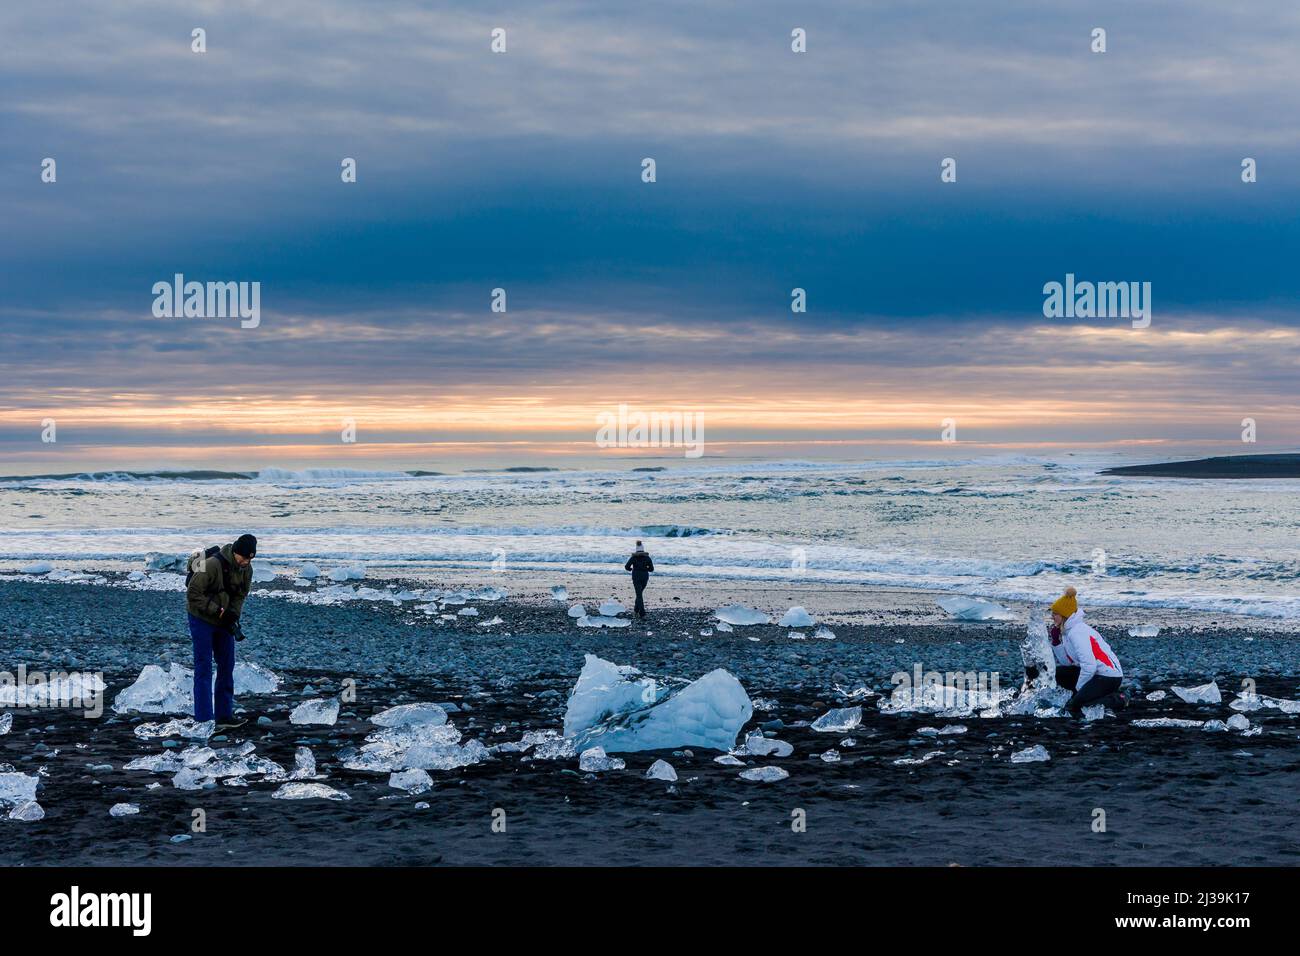 JOKULSARLON,ISLANDE - NOVEMBRE 18 2021: Touristes examinant des icebergs et des cristaux sur la plage de sable noir à Jokulsarlon, Islande Banque D'Images